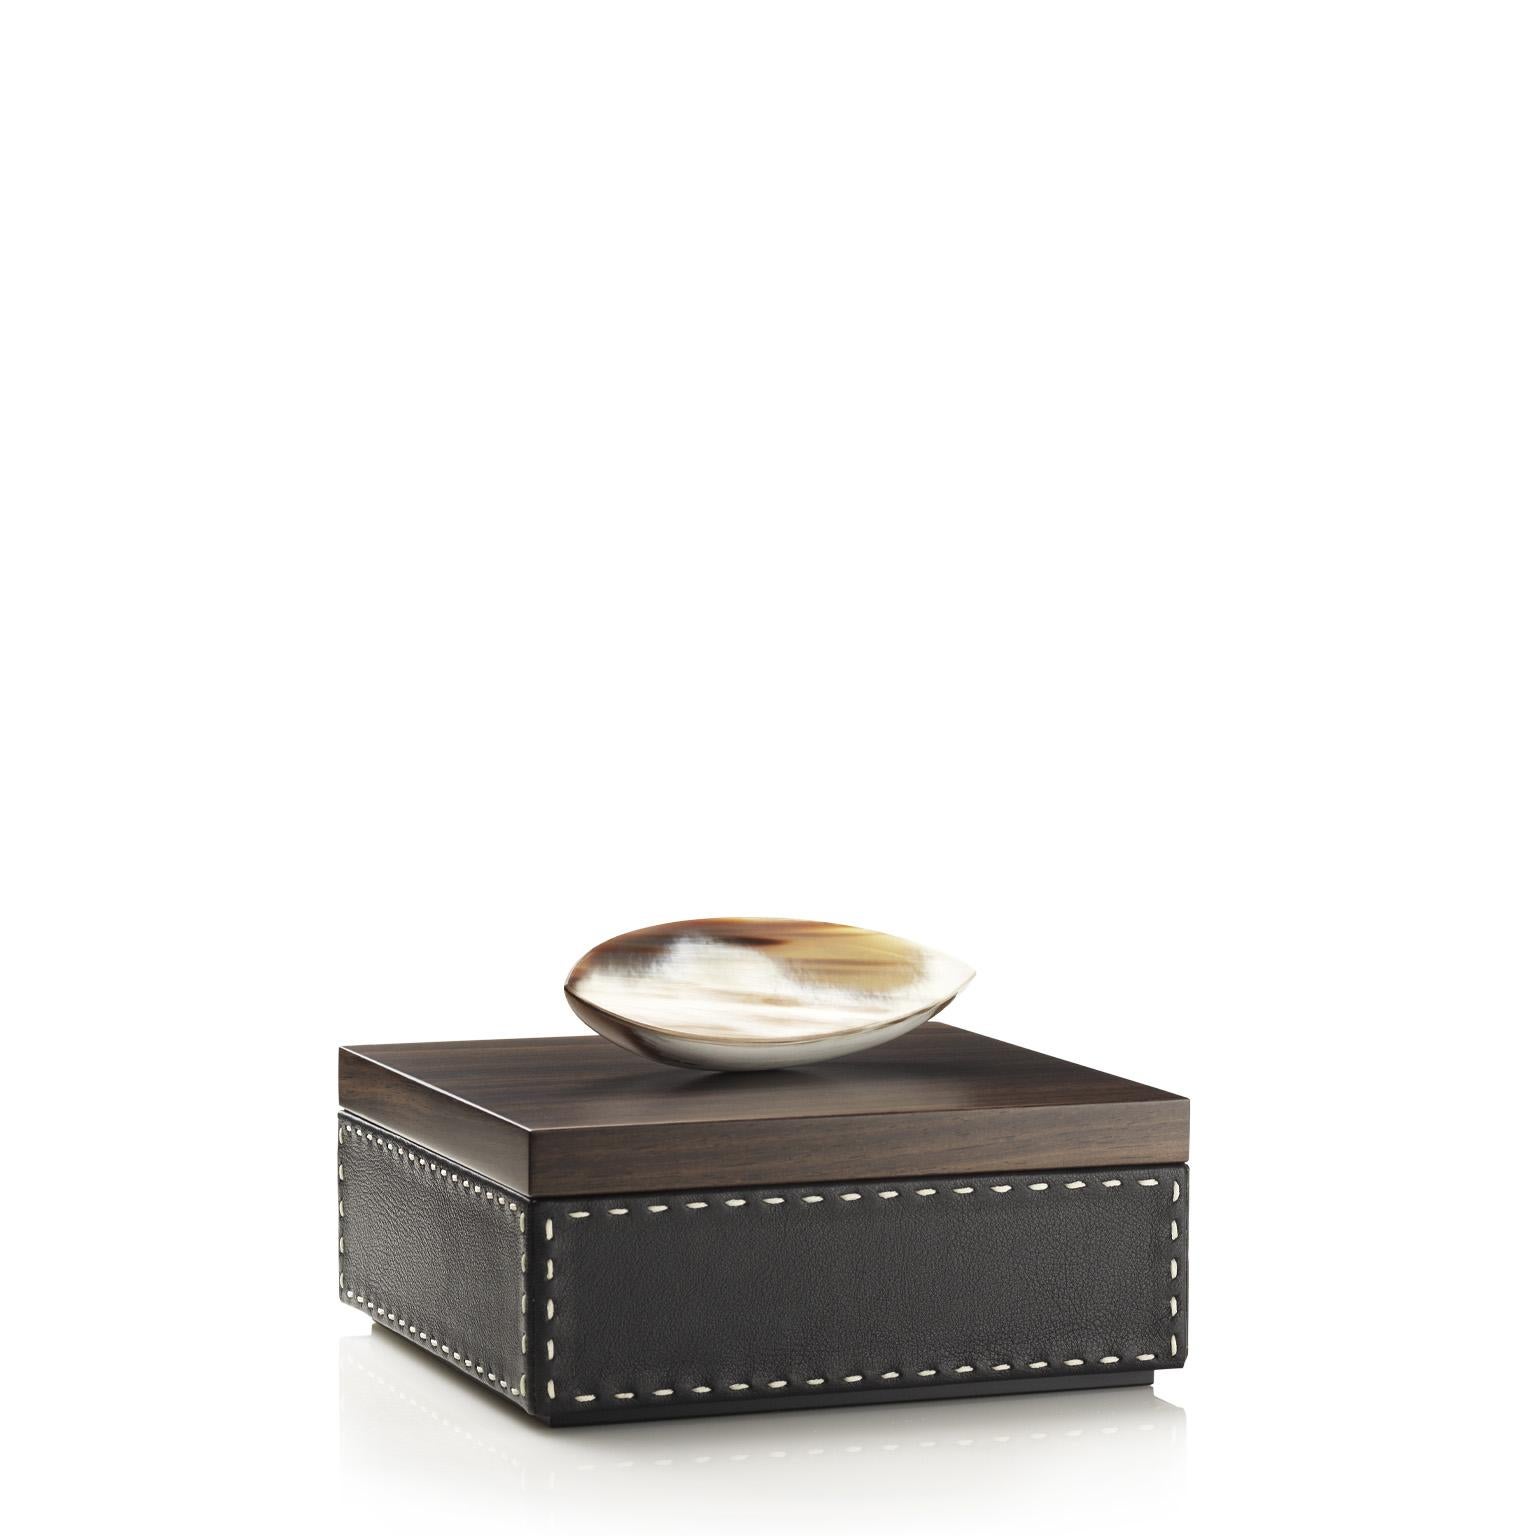 Capricia Square Box in Pebbled Leather with Handle in Corno Italiano, Mod. 4471 For Sale 1